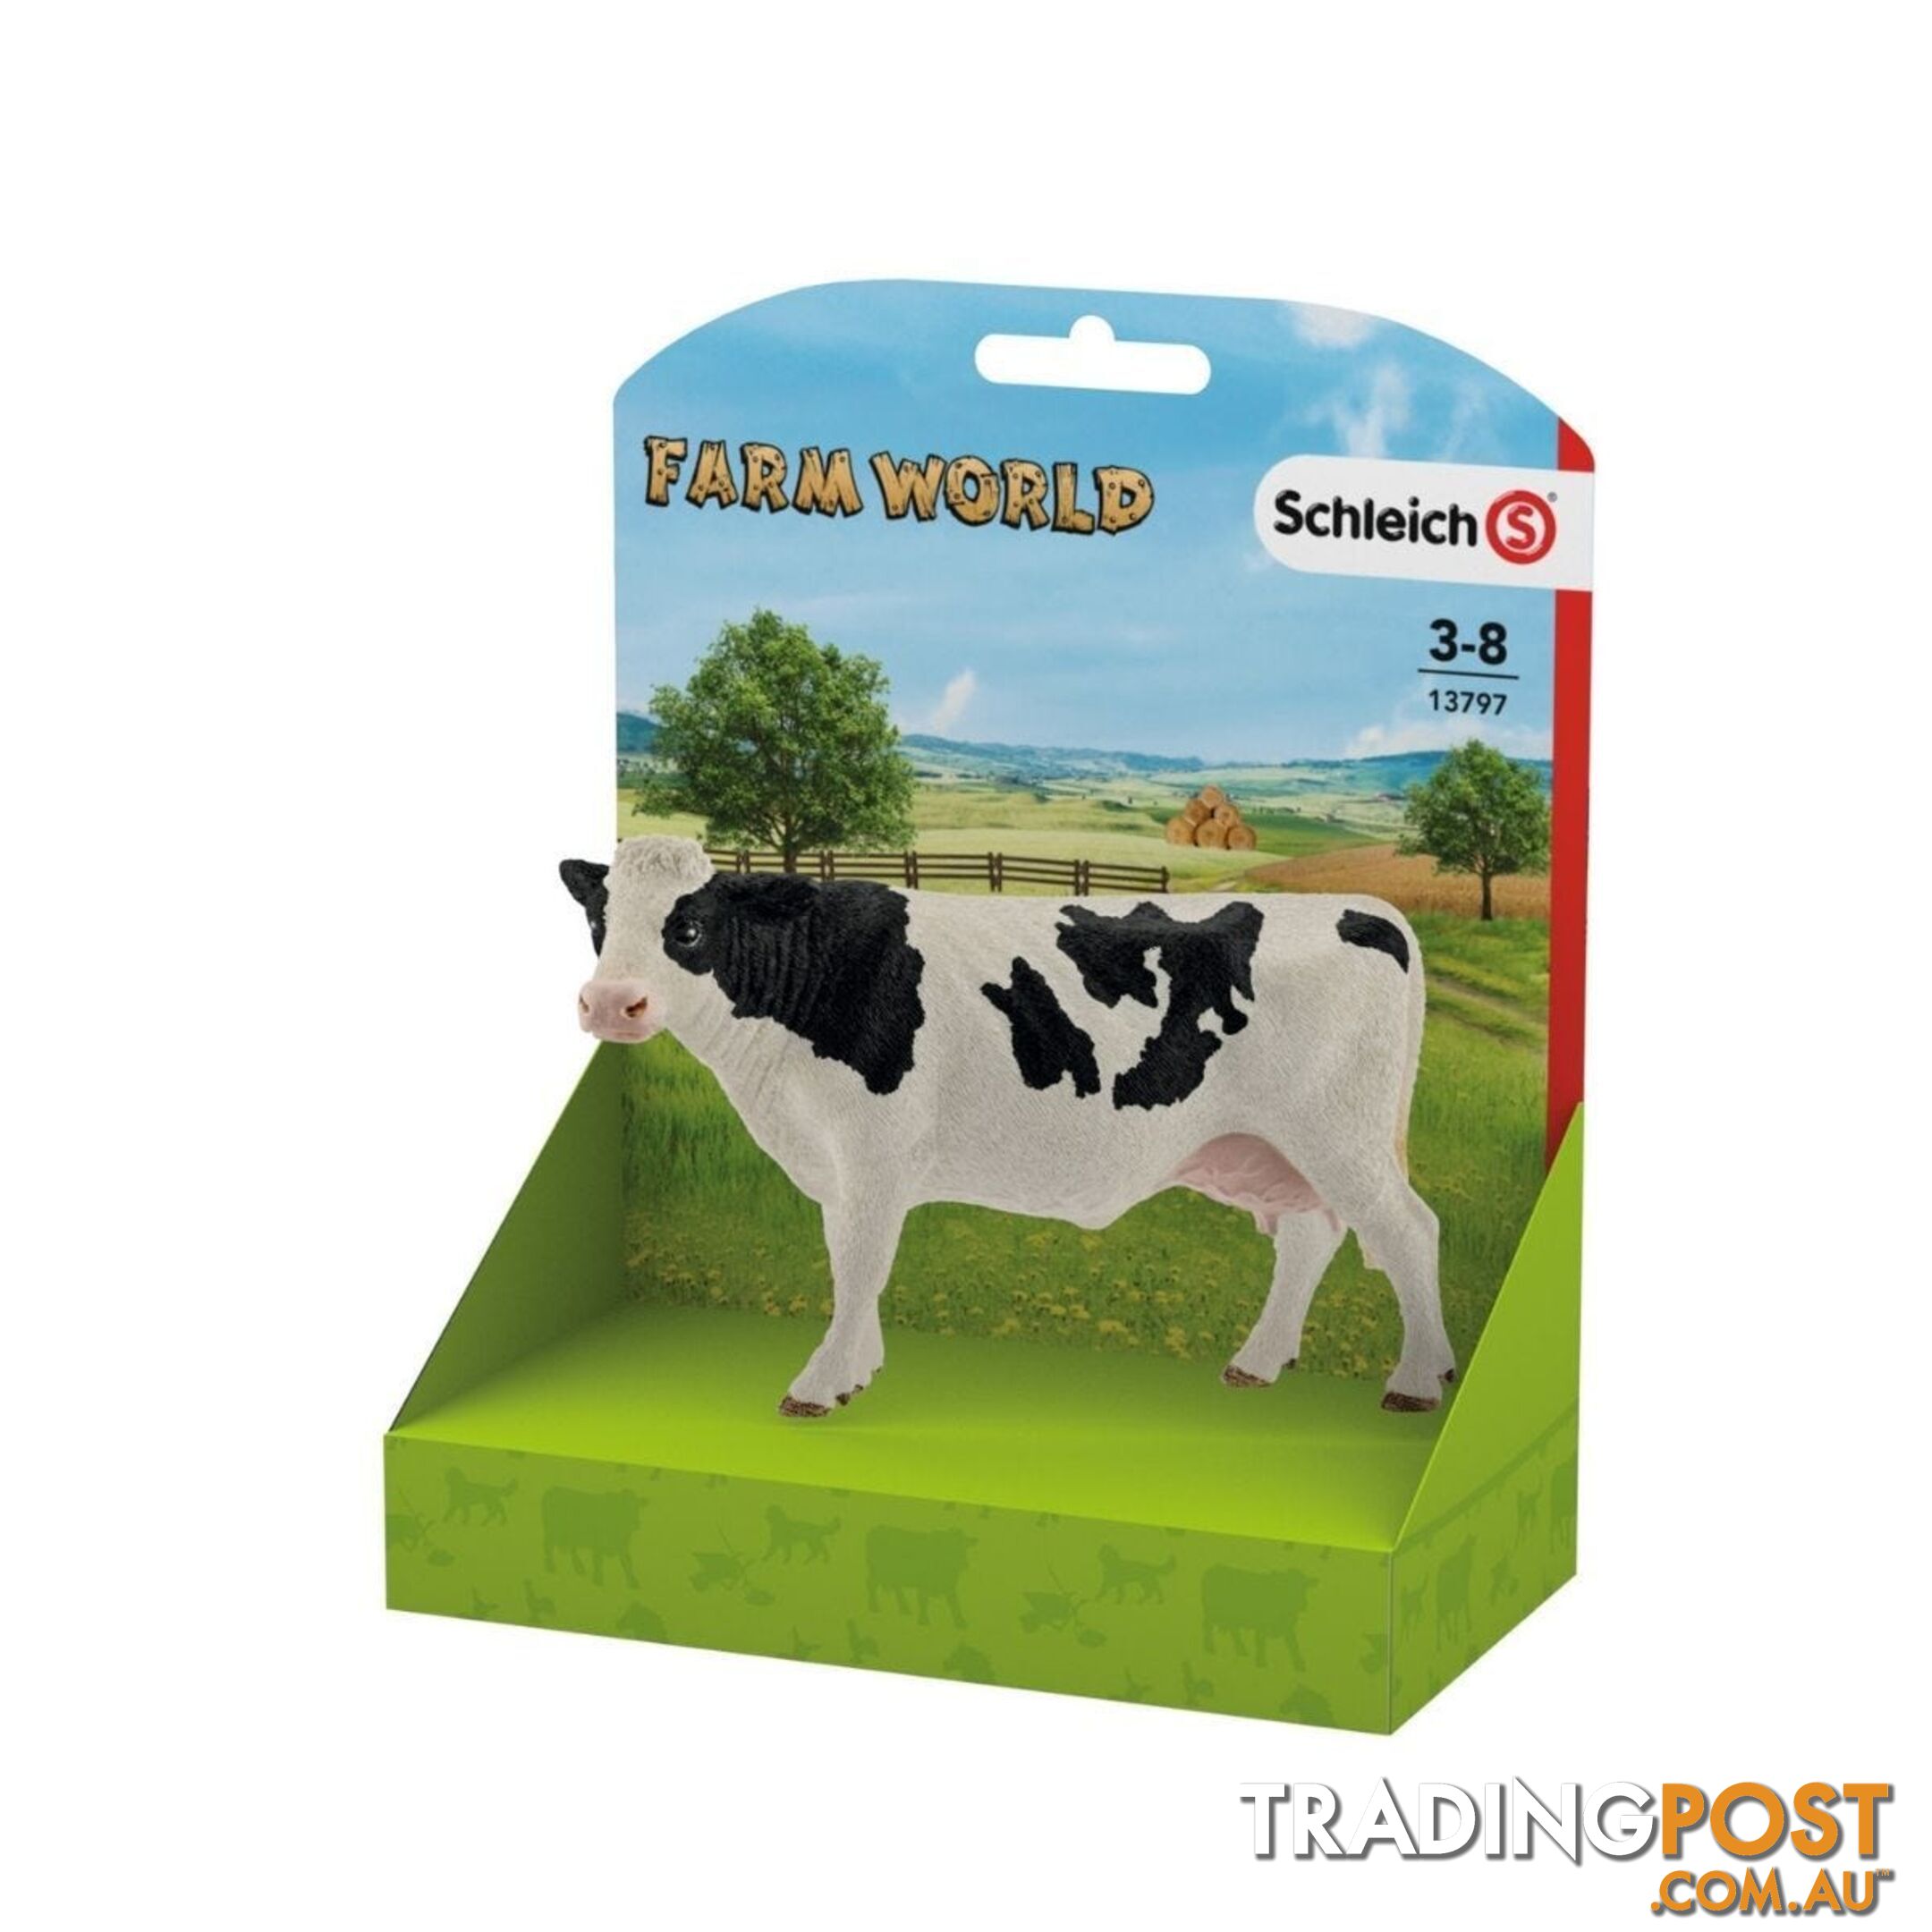 Schleich - Holstein Cow  Farm World Animal Figurine Sc13797 - 4005086137974